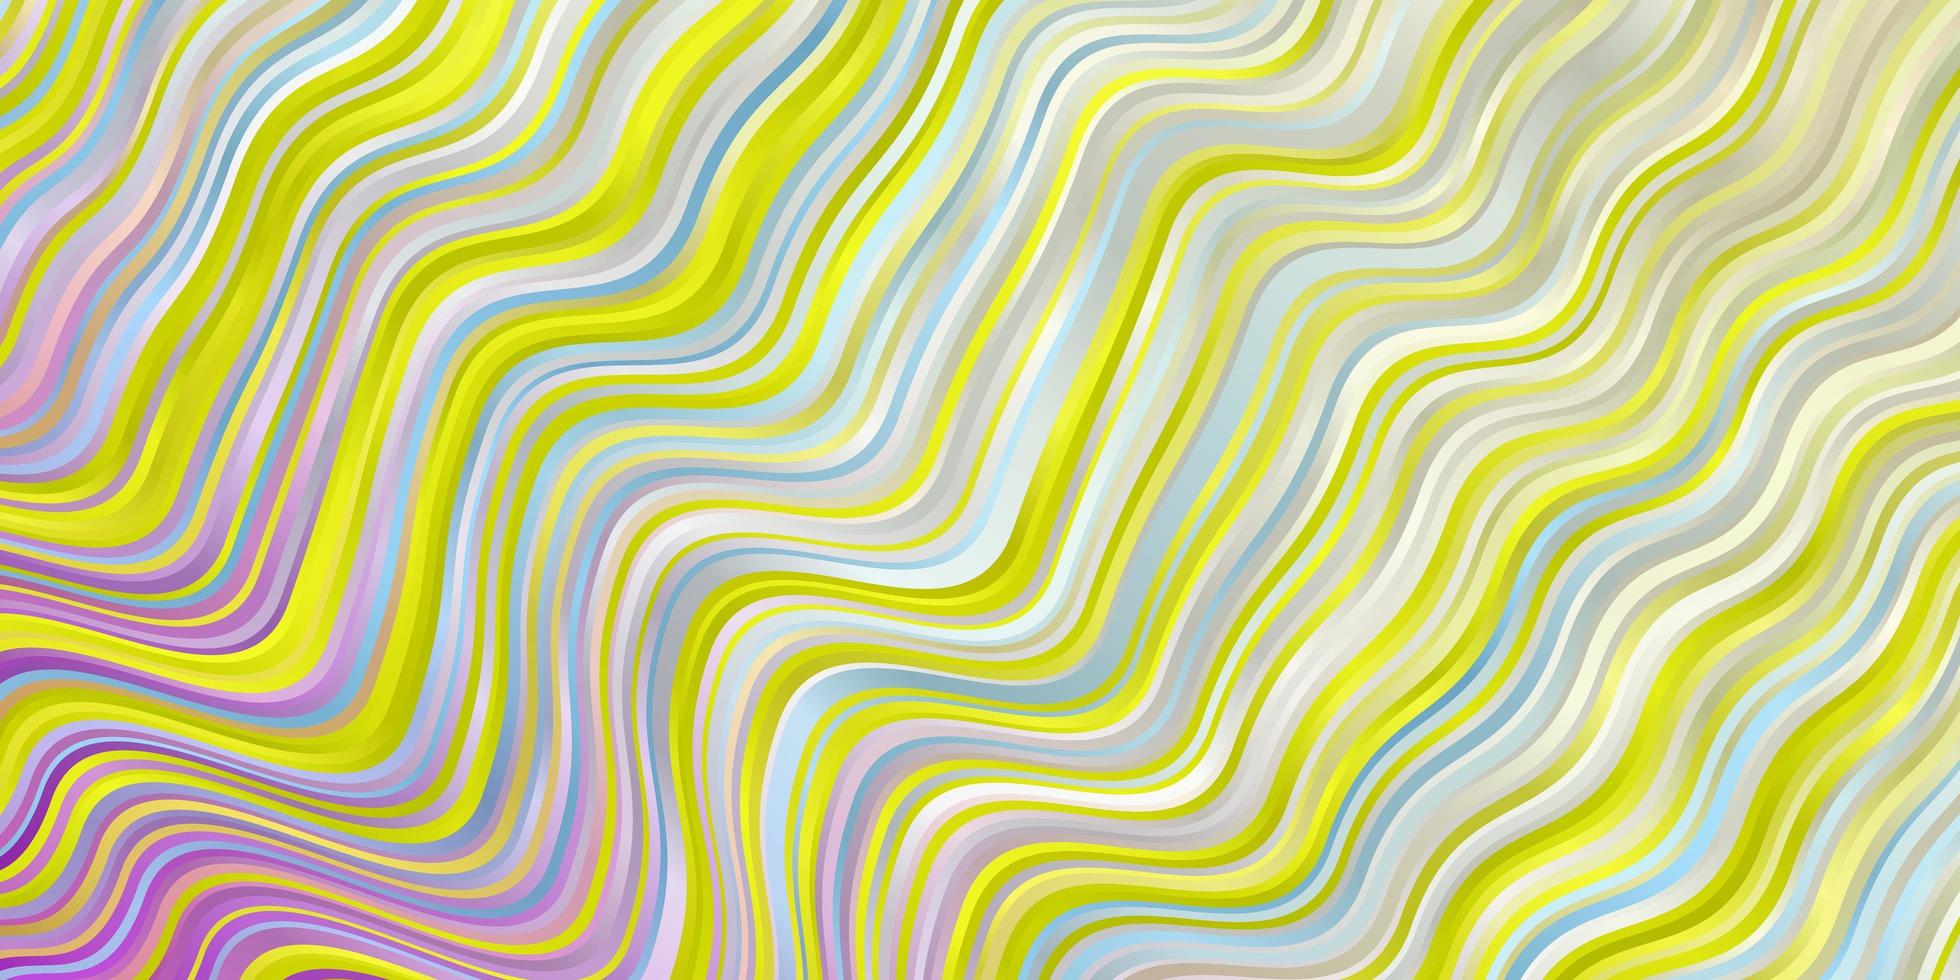 ljus flerfärgad vektorbakgrund med böjda linjer. vektor